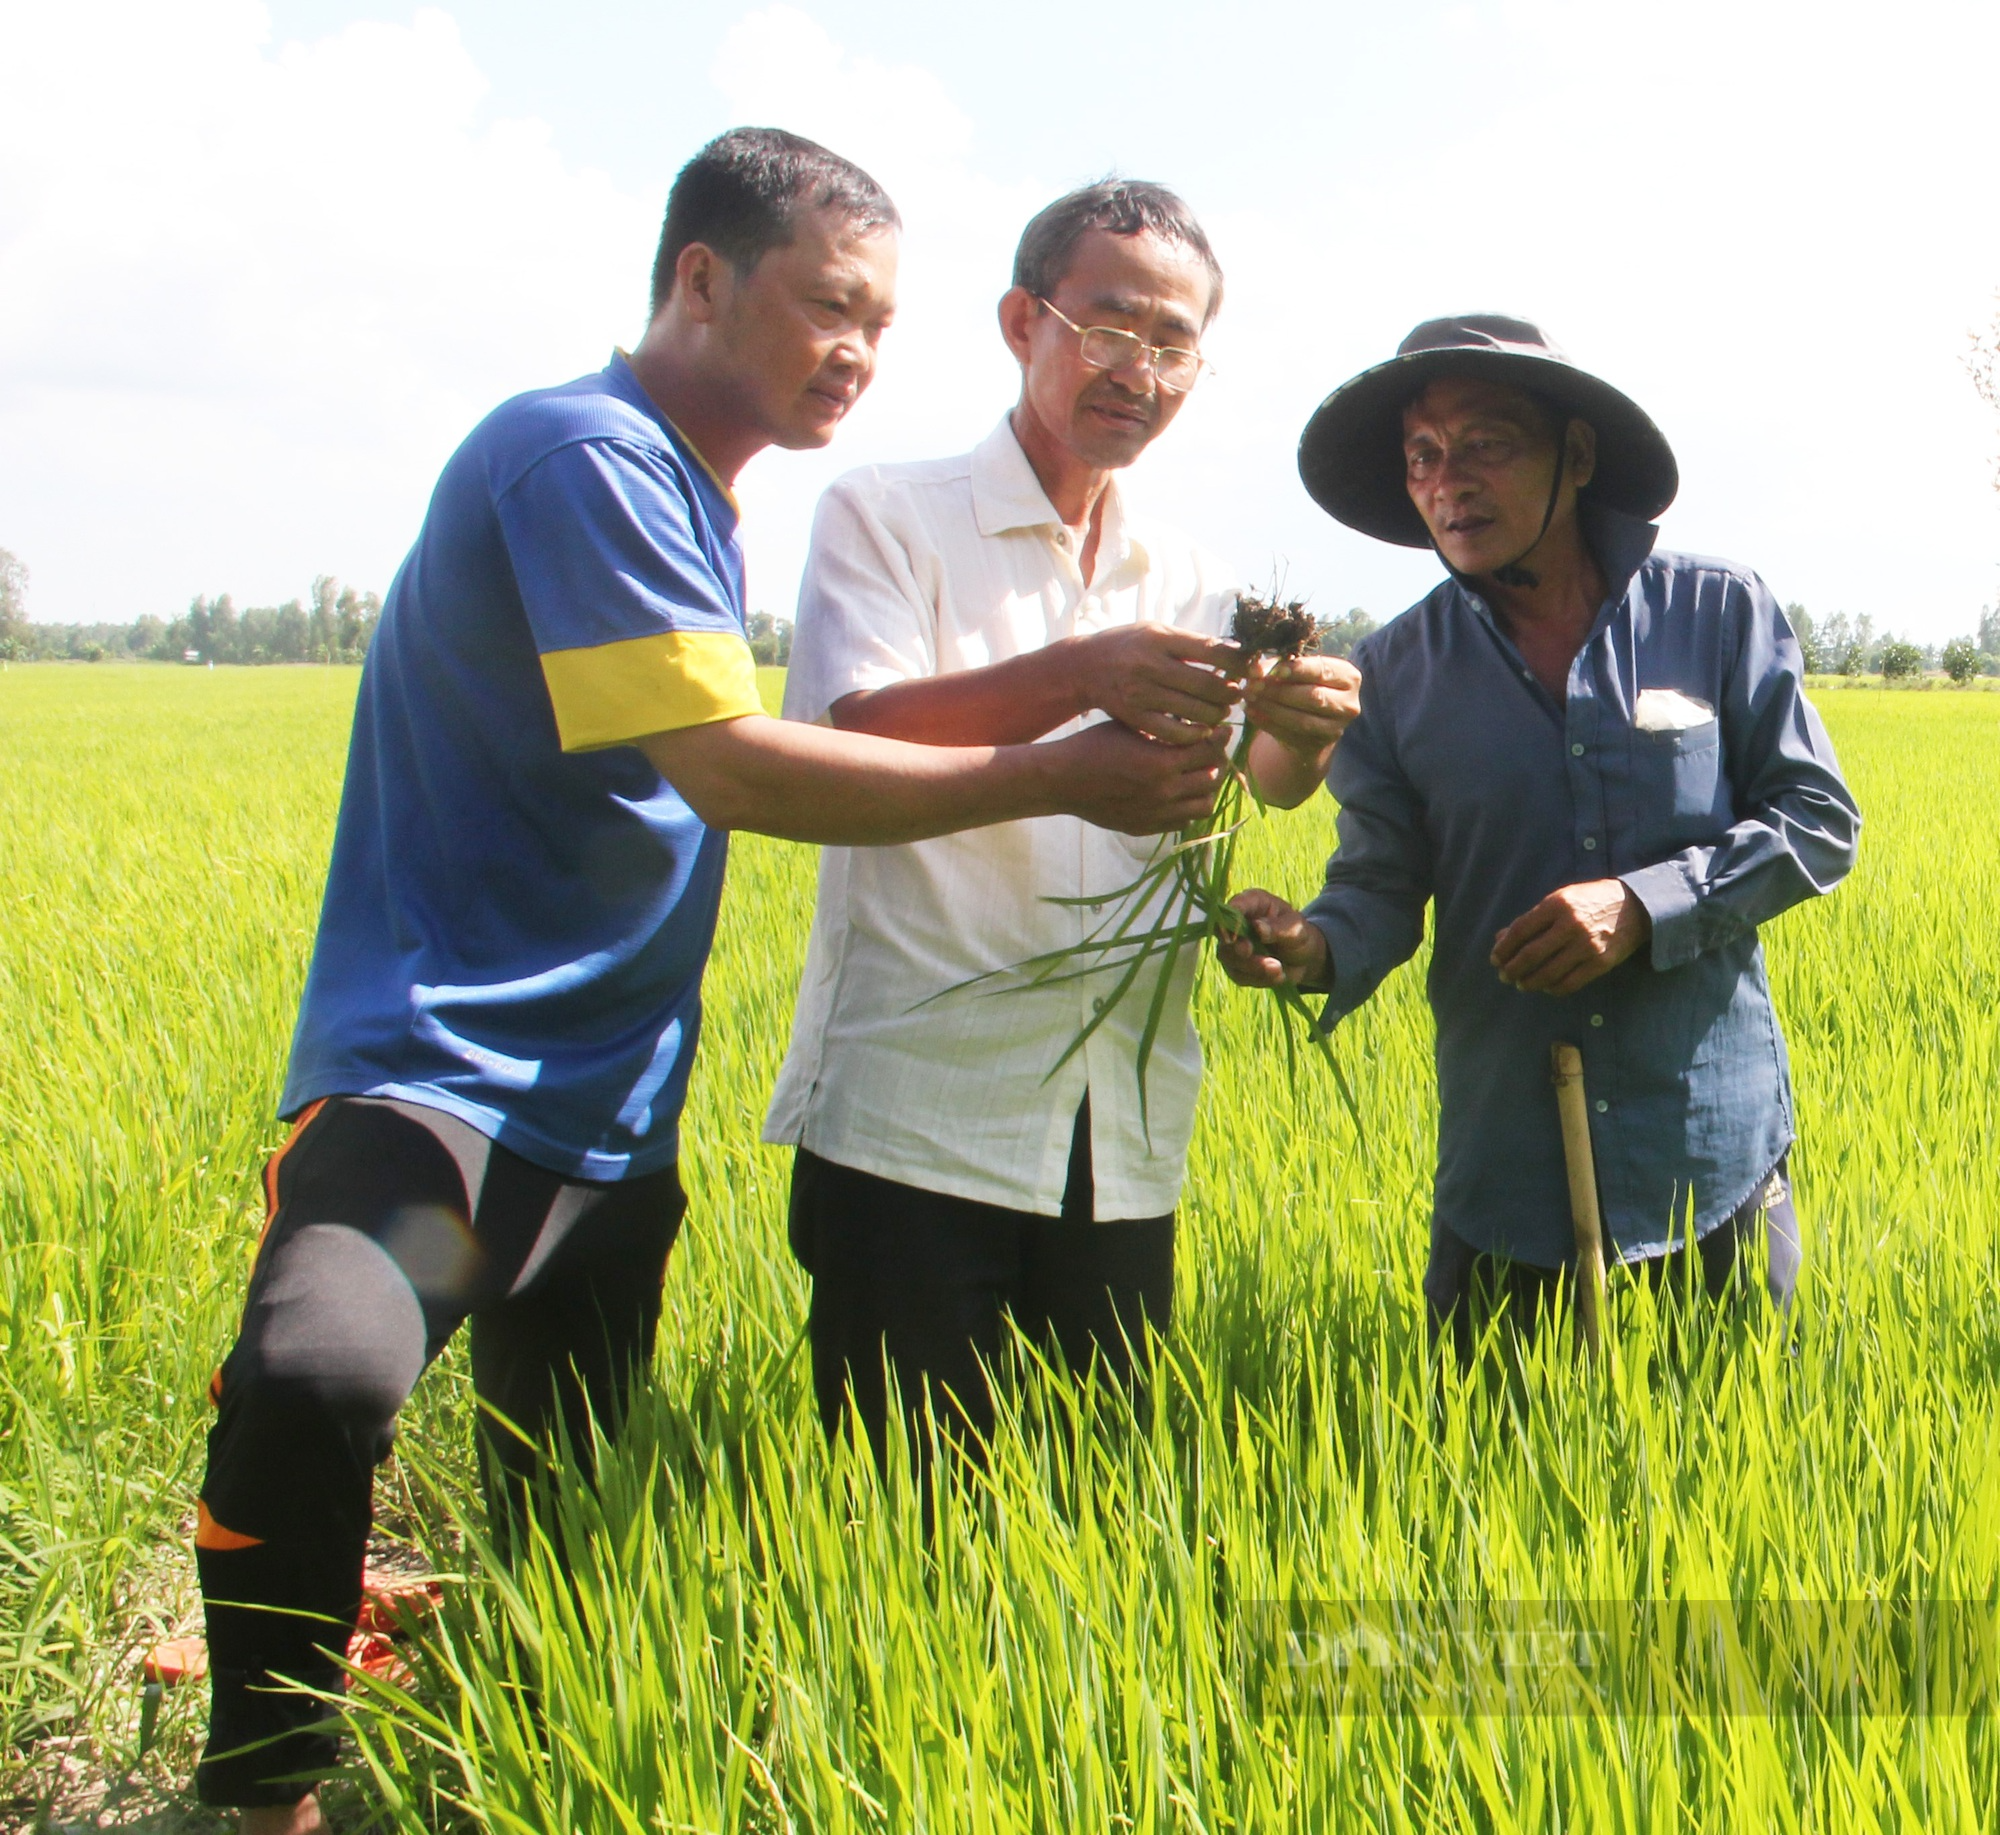 Nông dân trồng lúa vùng ĐBSCL khó đạt lợi nhuận 100% - Ảnh 2.